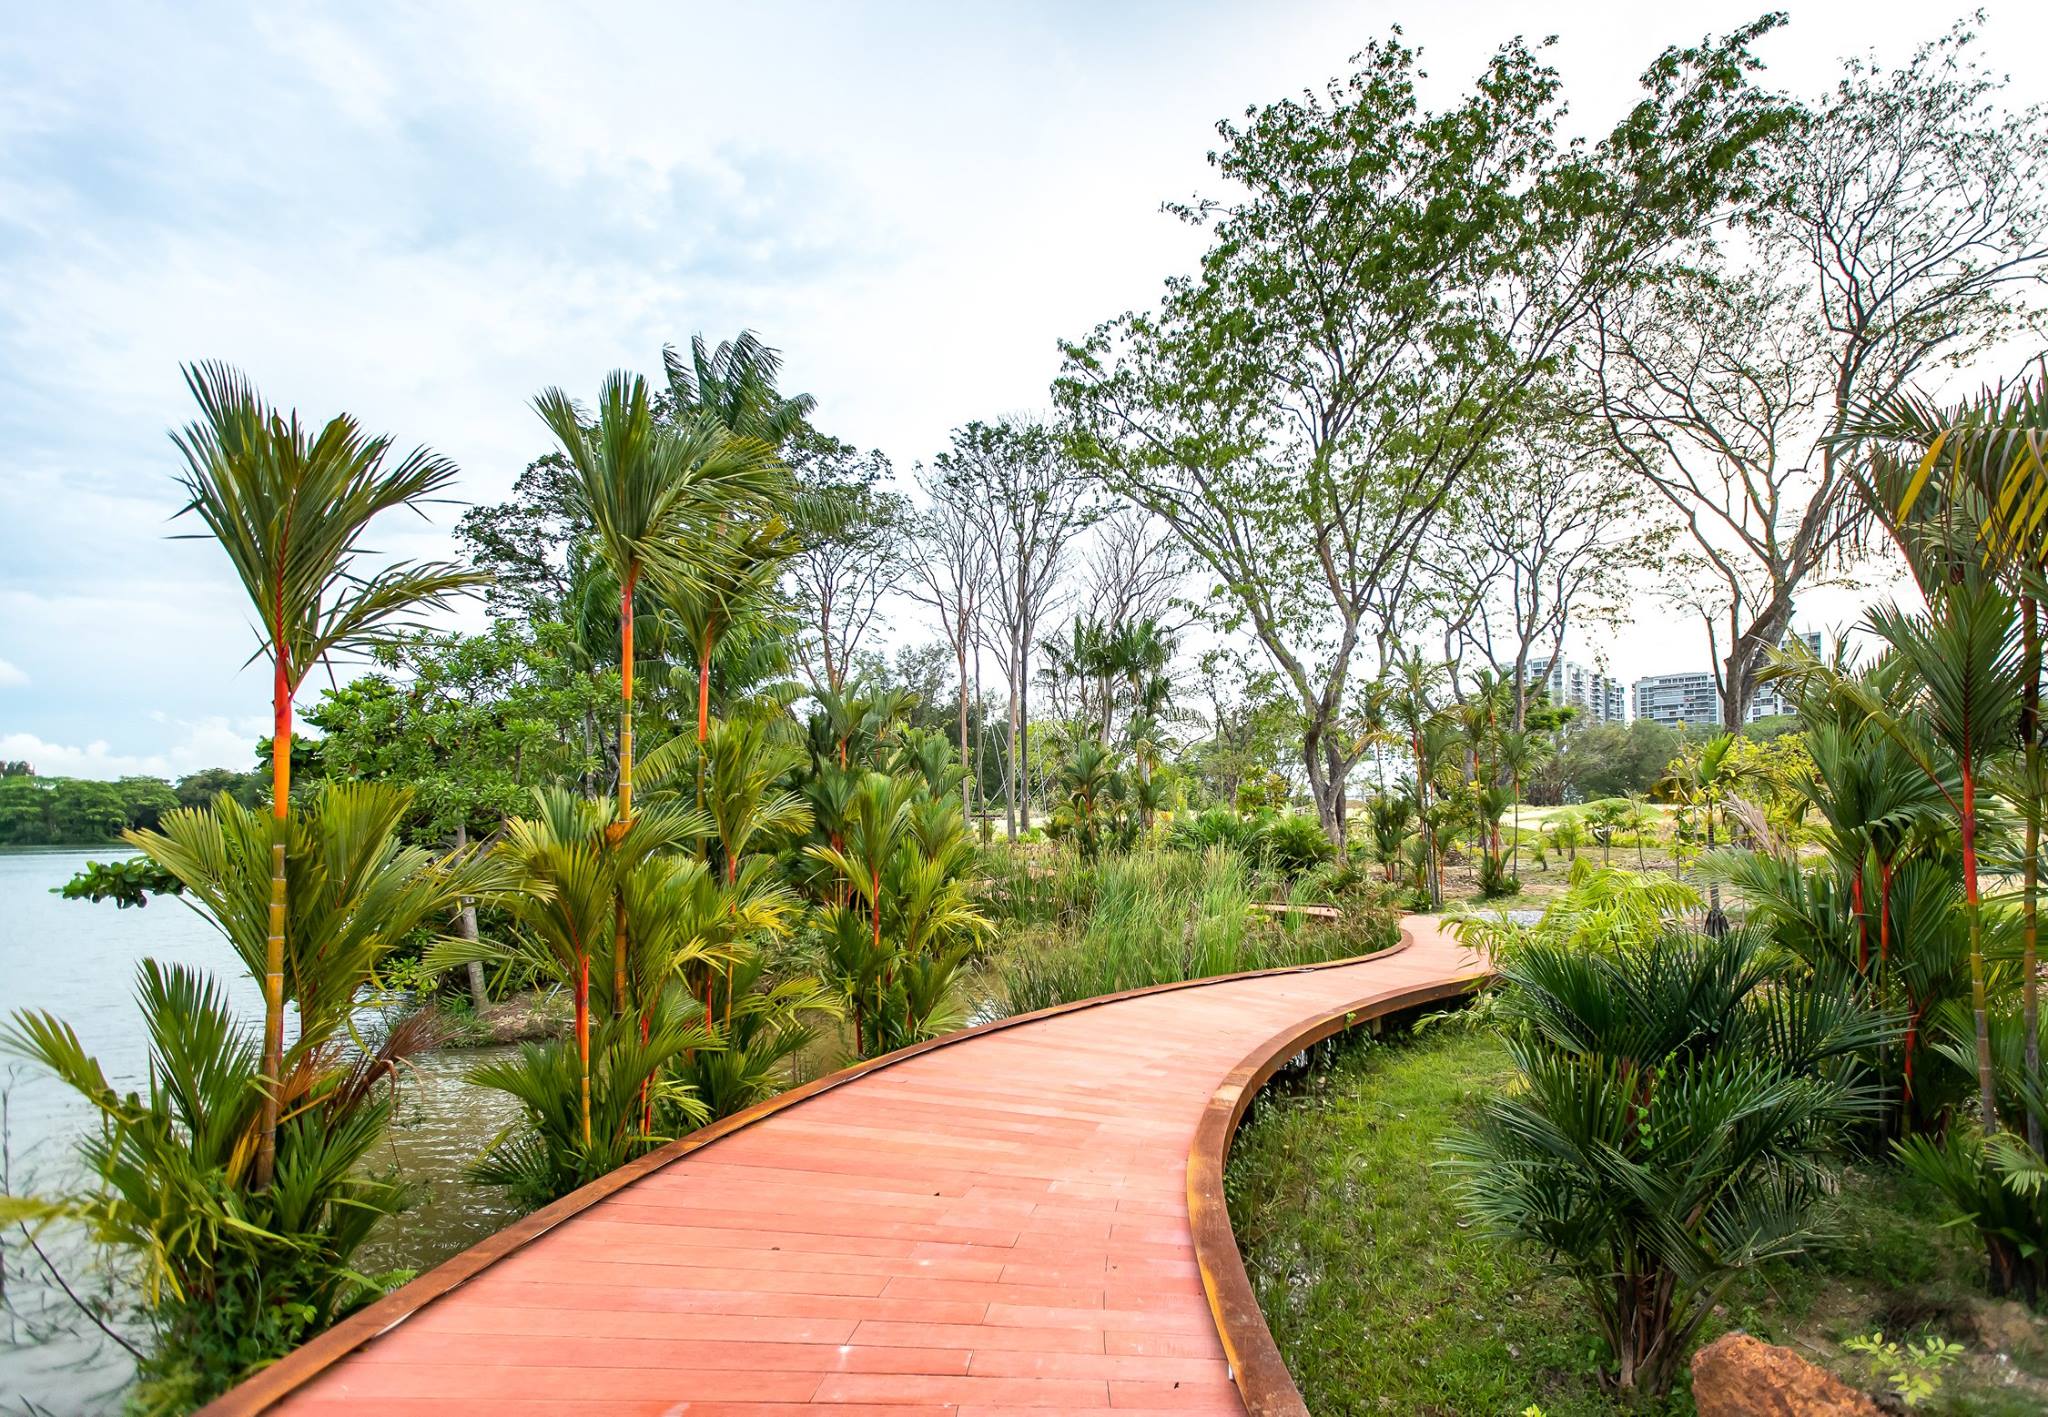 Jurong Lake Garden